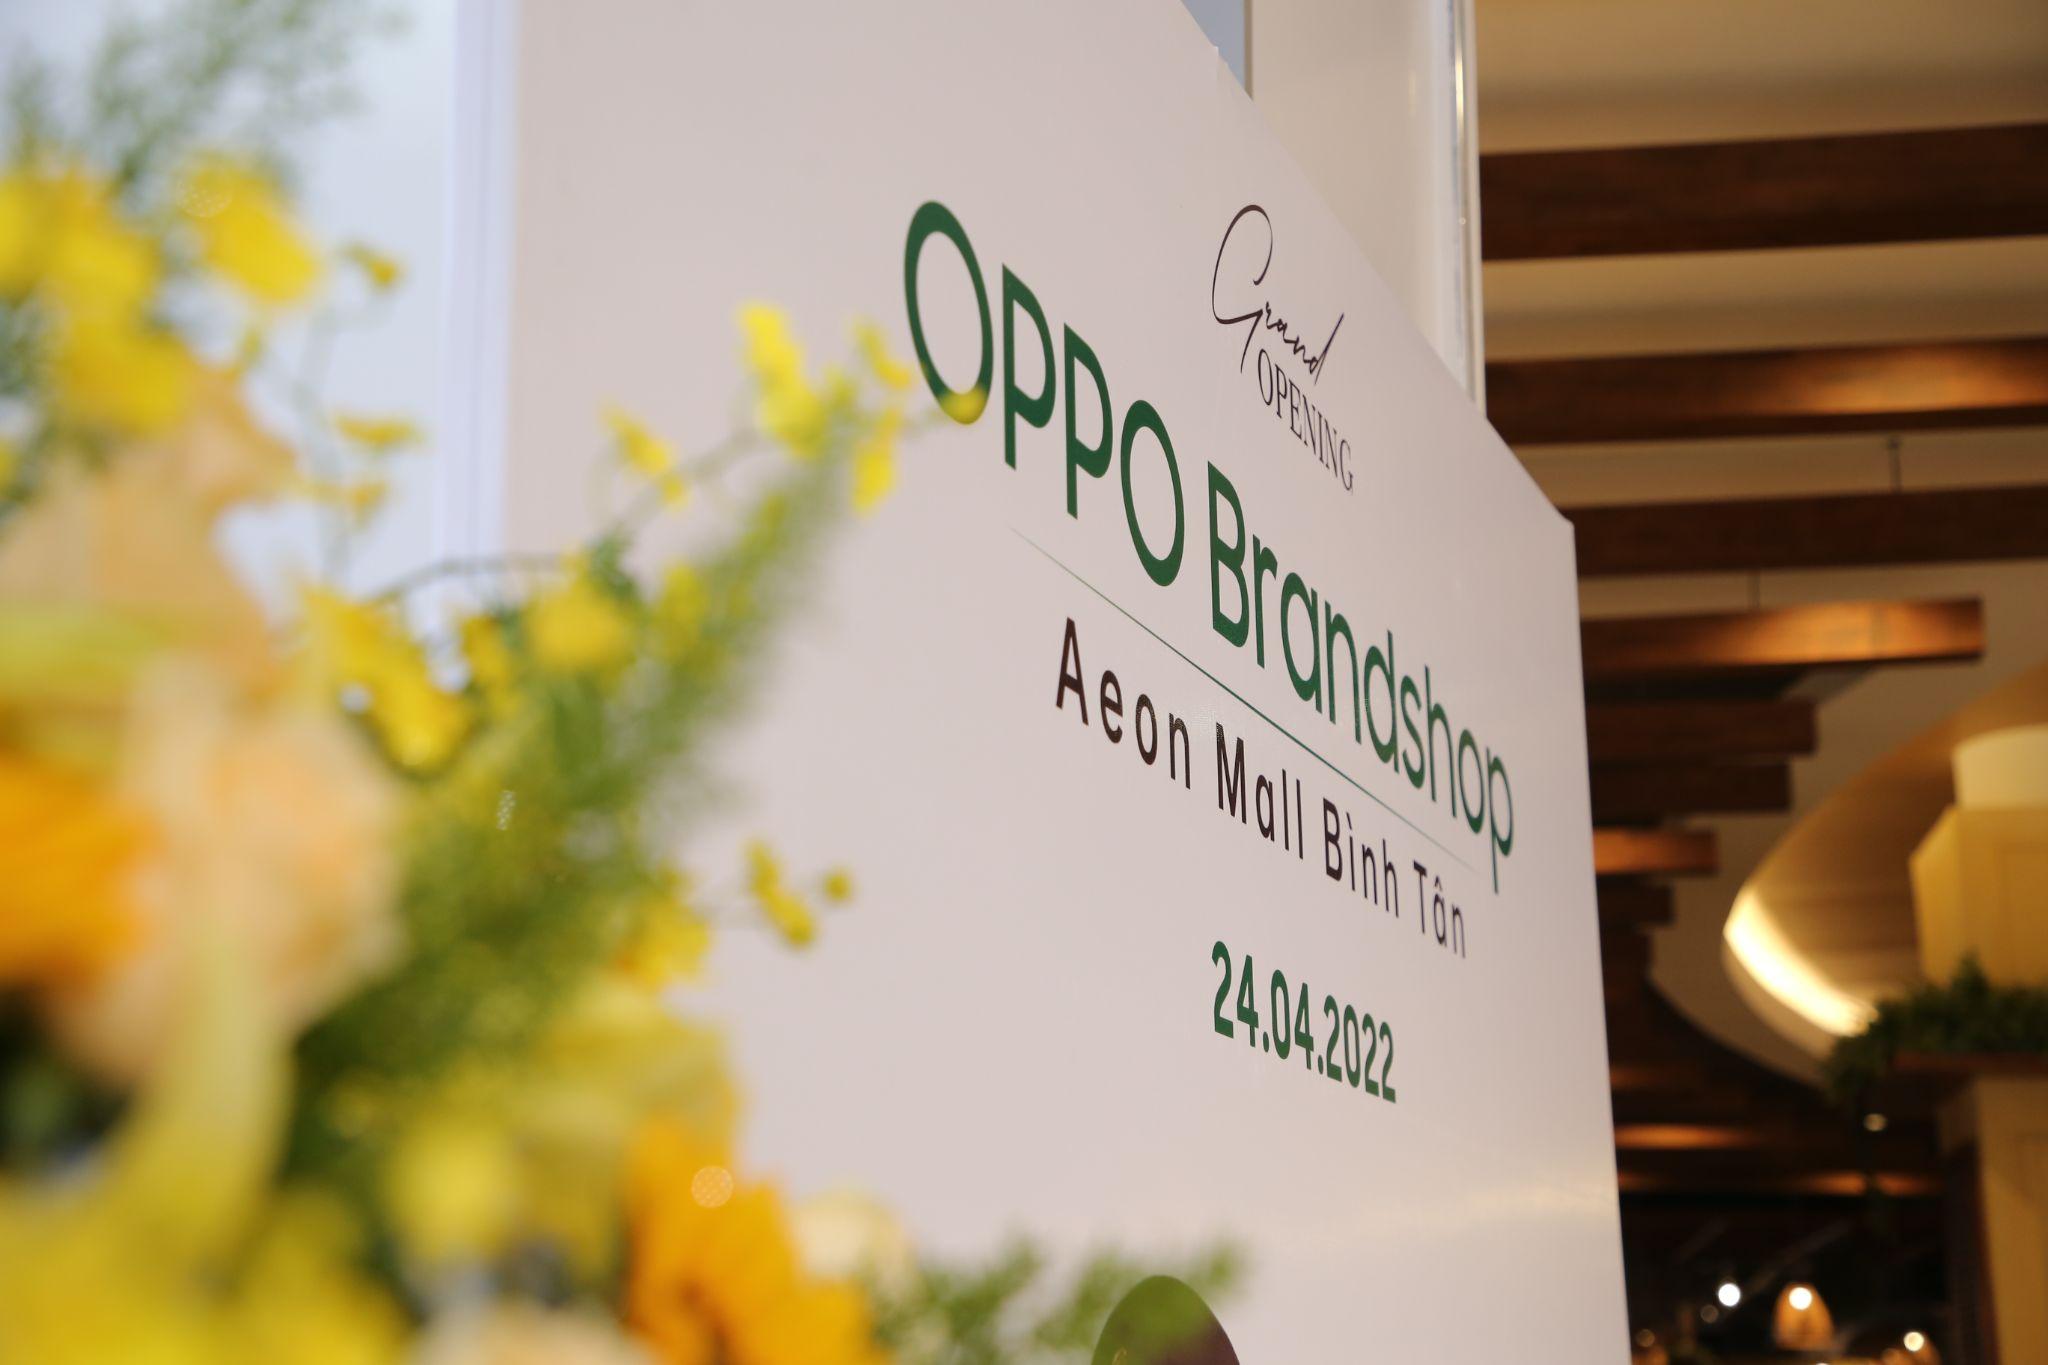 OPPO ra mắt chuỗi OPPO Experience Store trên toàn quốc trong tháng 4/2022, mang đến không gian trải nghiệm đẳng cấp cho người dùng